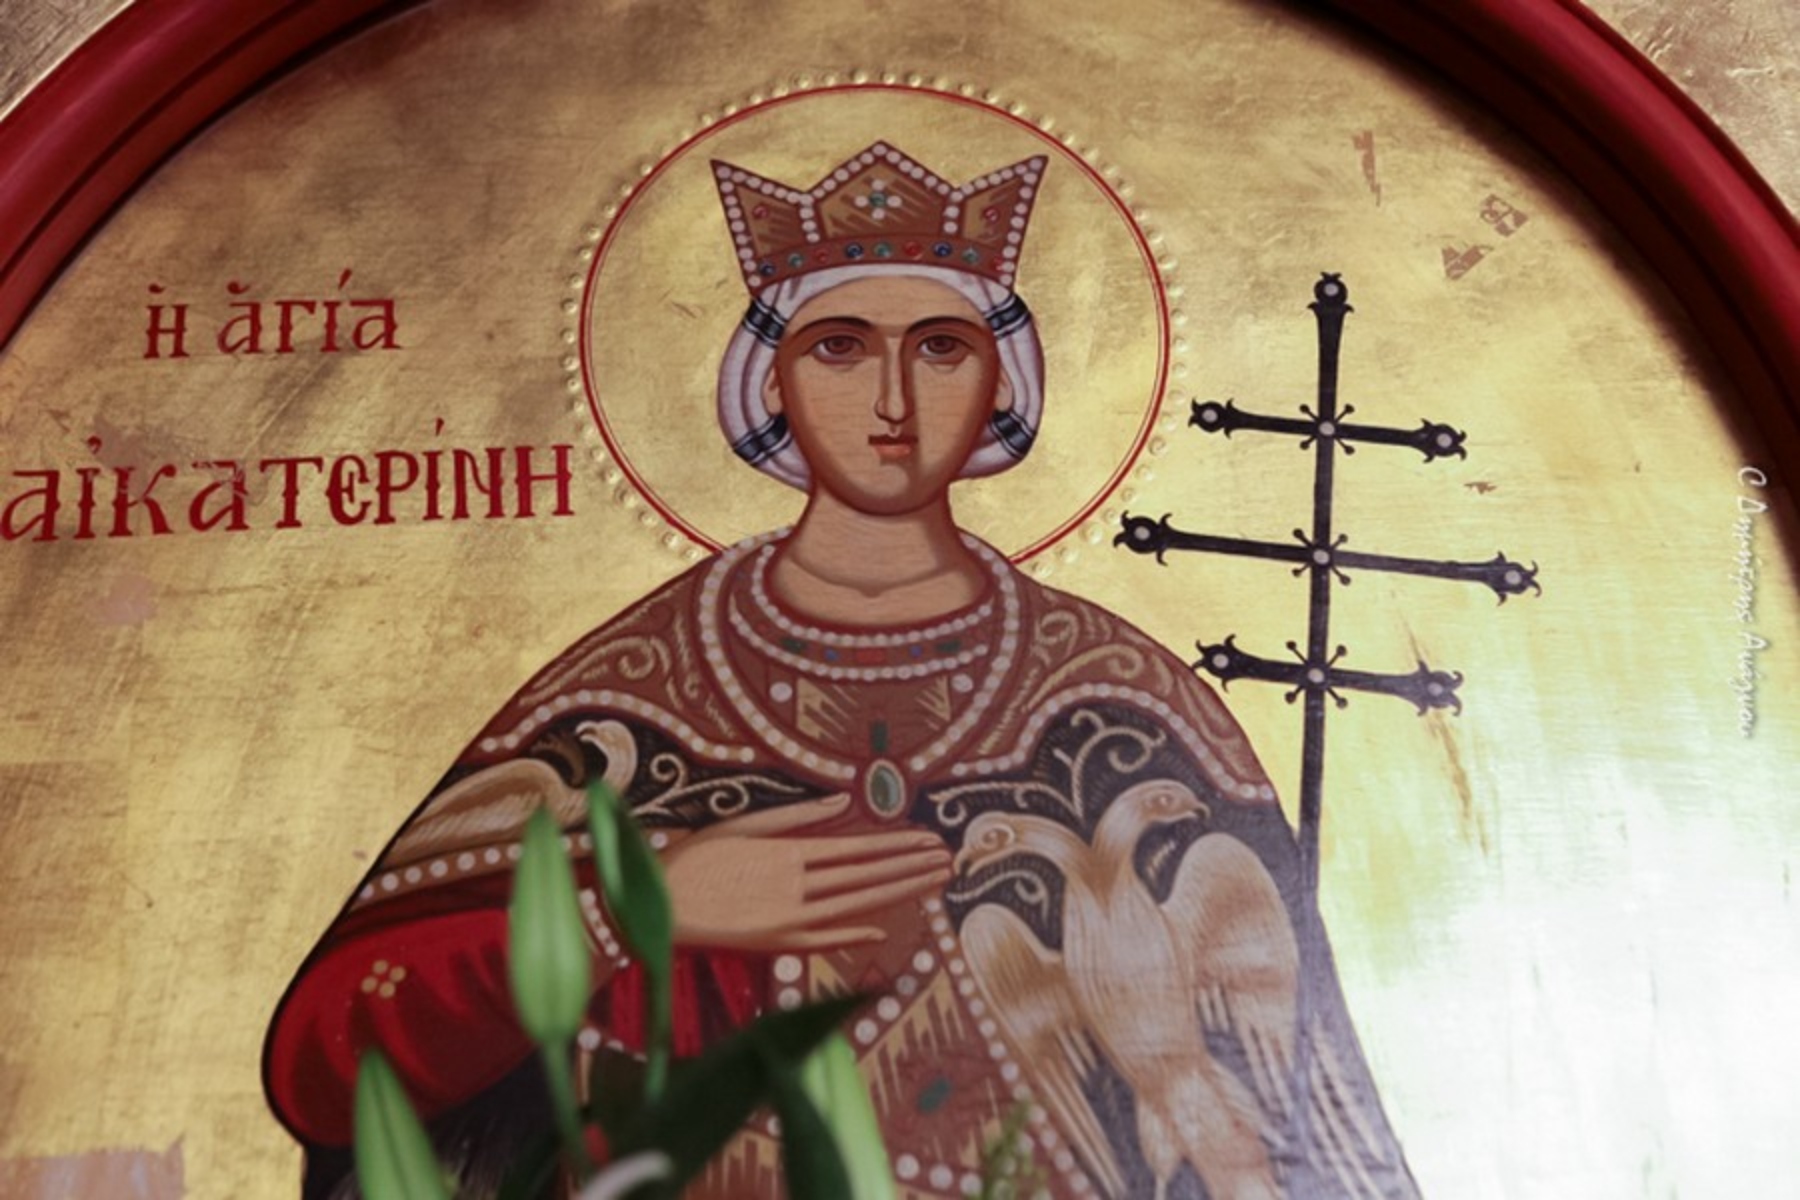 Αγία Αικατερίνη: Η μεγαλομάρτυρας της Ορθοδοξίας γιορτάζει αύριο 25 Νοεμβρίου